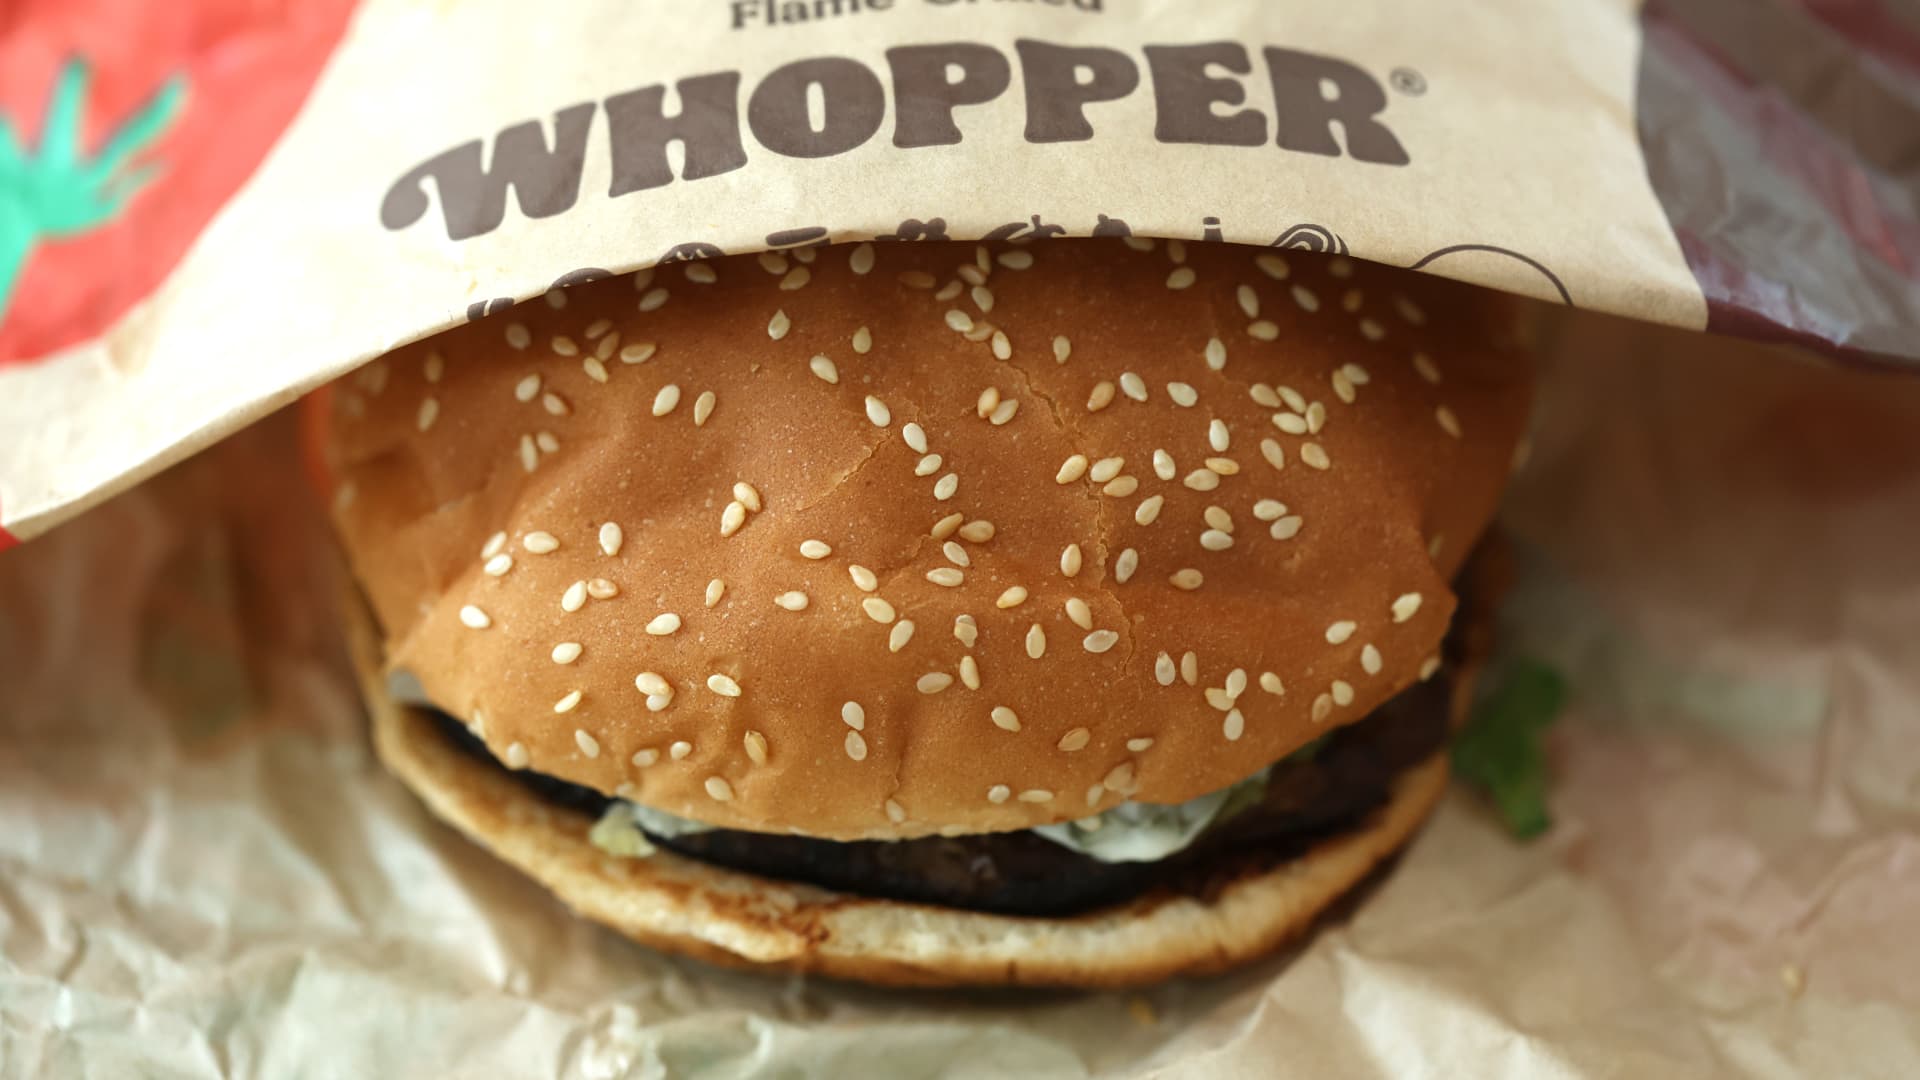 Burger King’s turnaround plan boosts sales, customer satisfaction